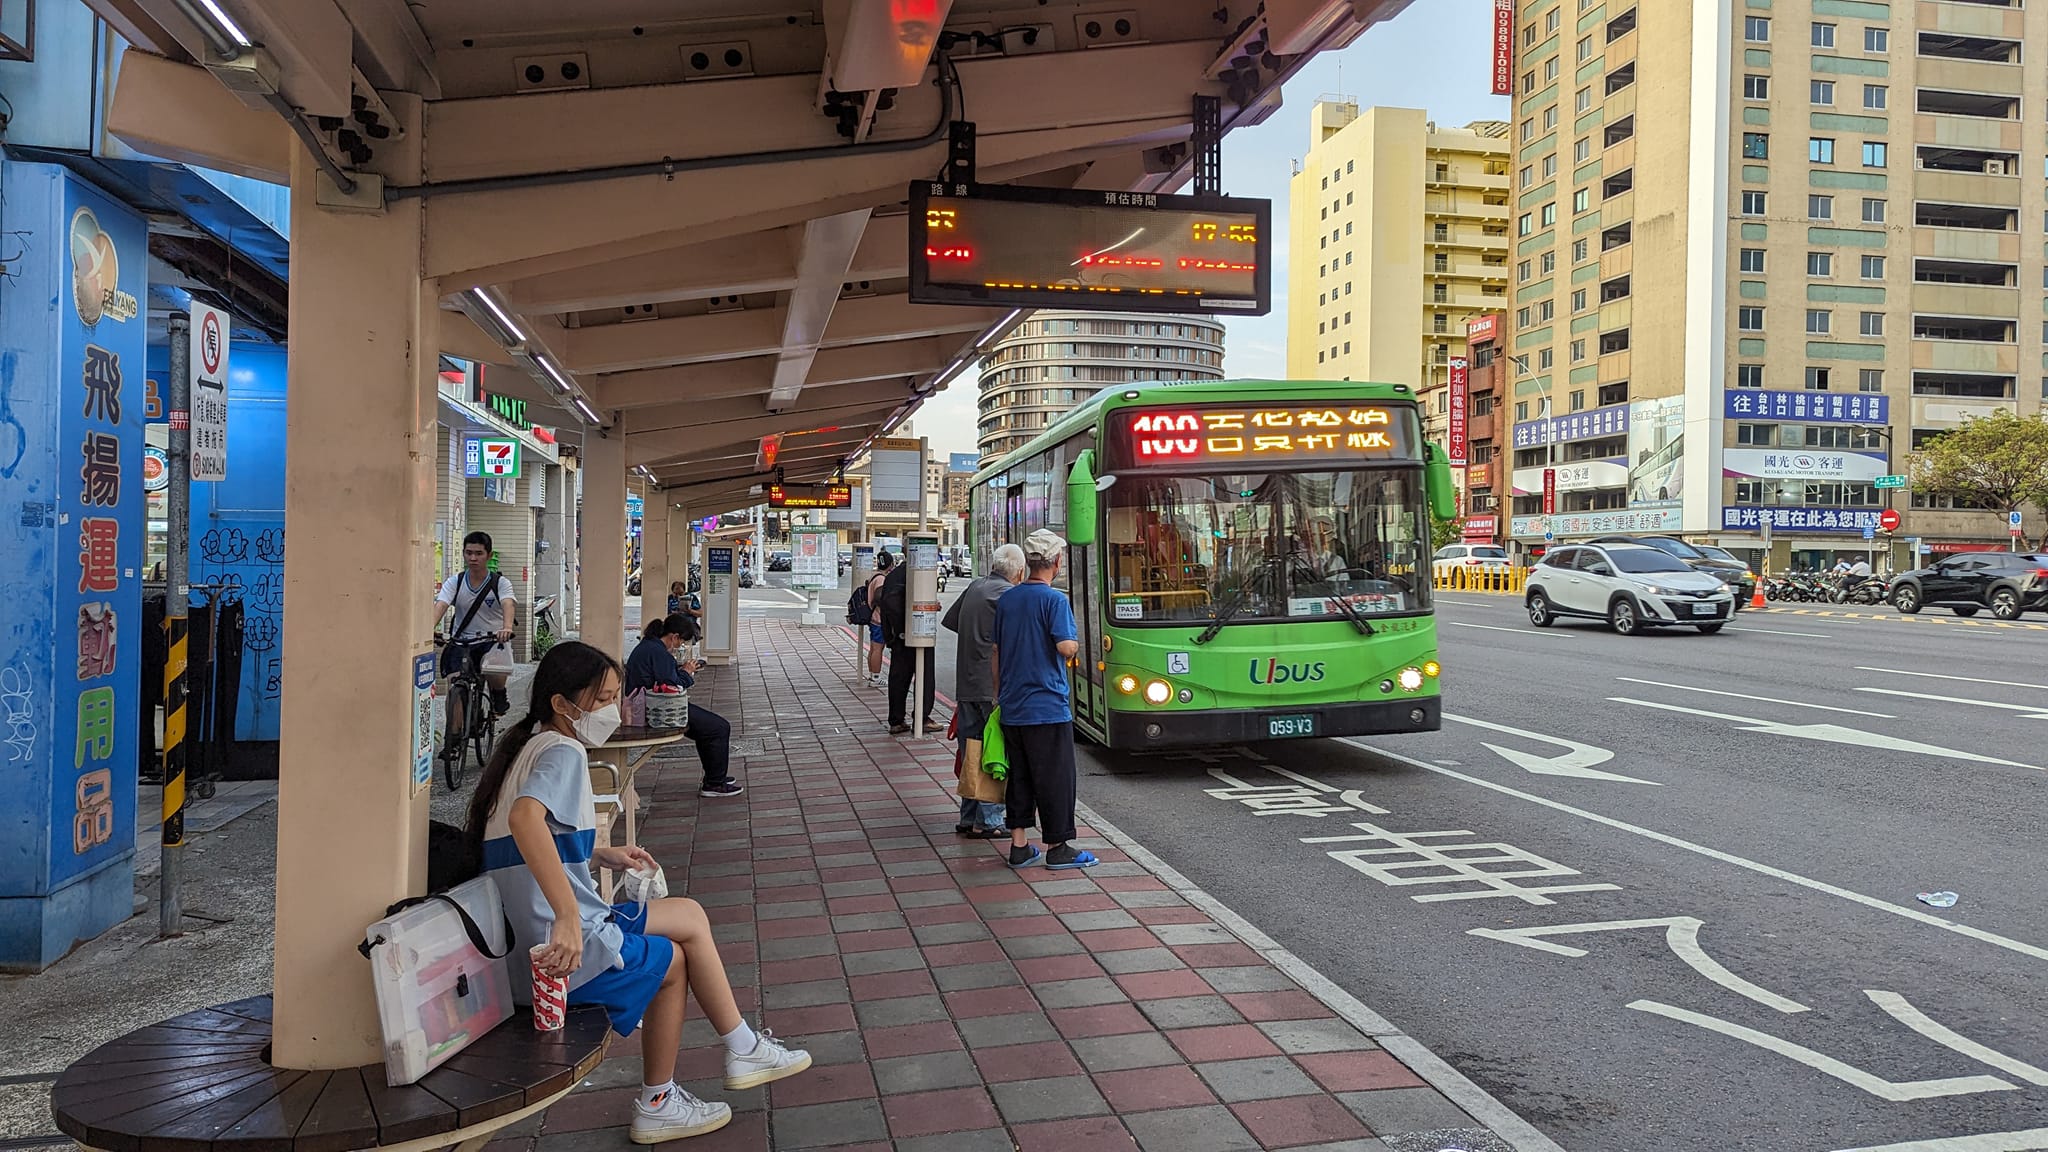 高雄市交通局持续检讨公车路网，9月将进行全面性公车路线调整。记者潘奕言／摄影